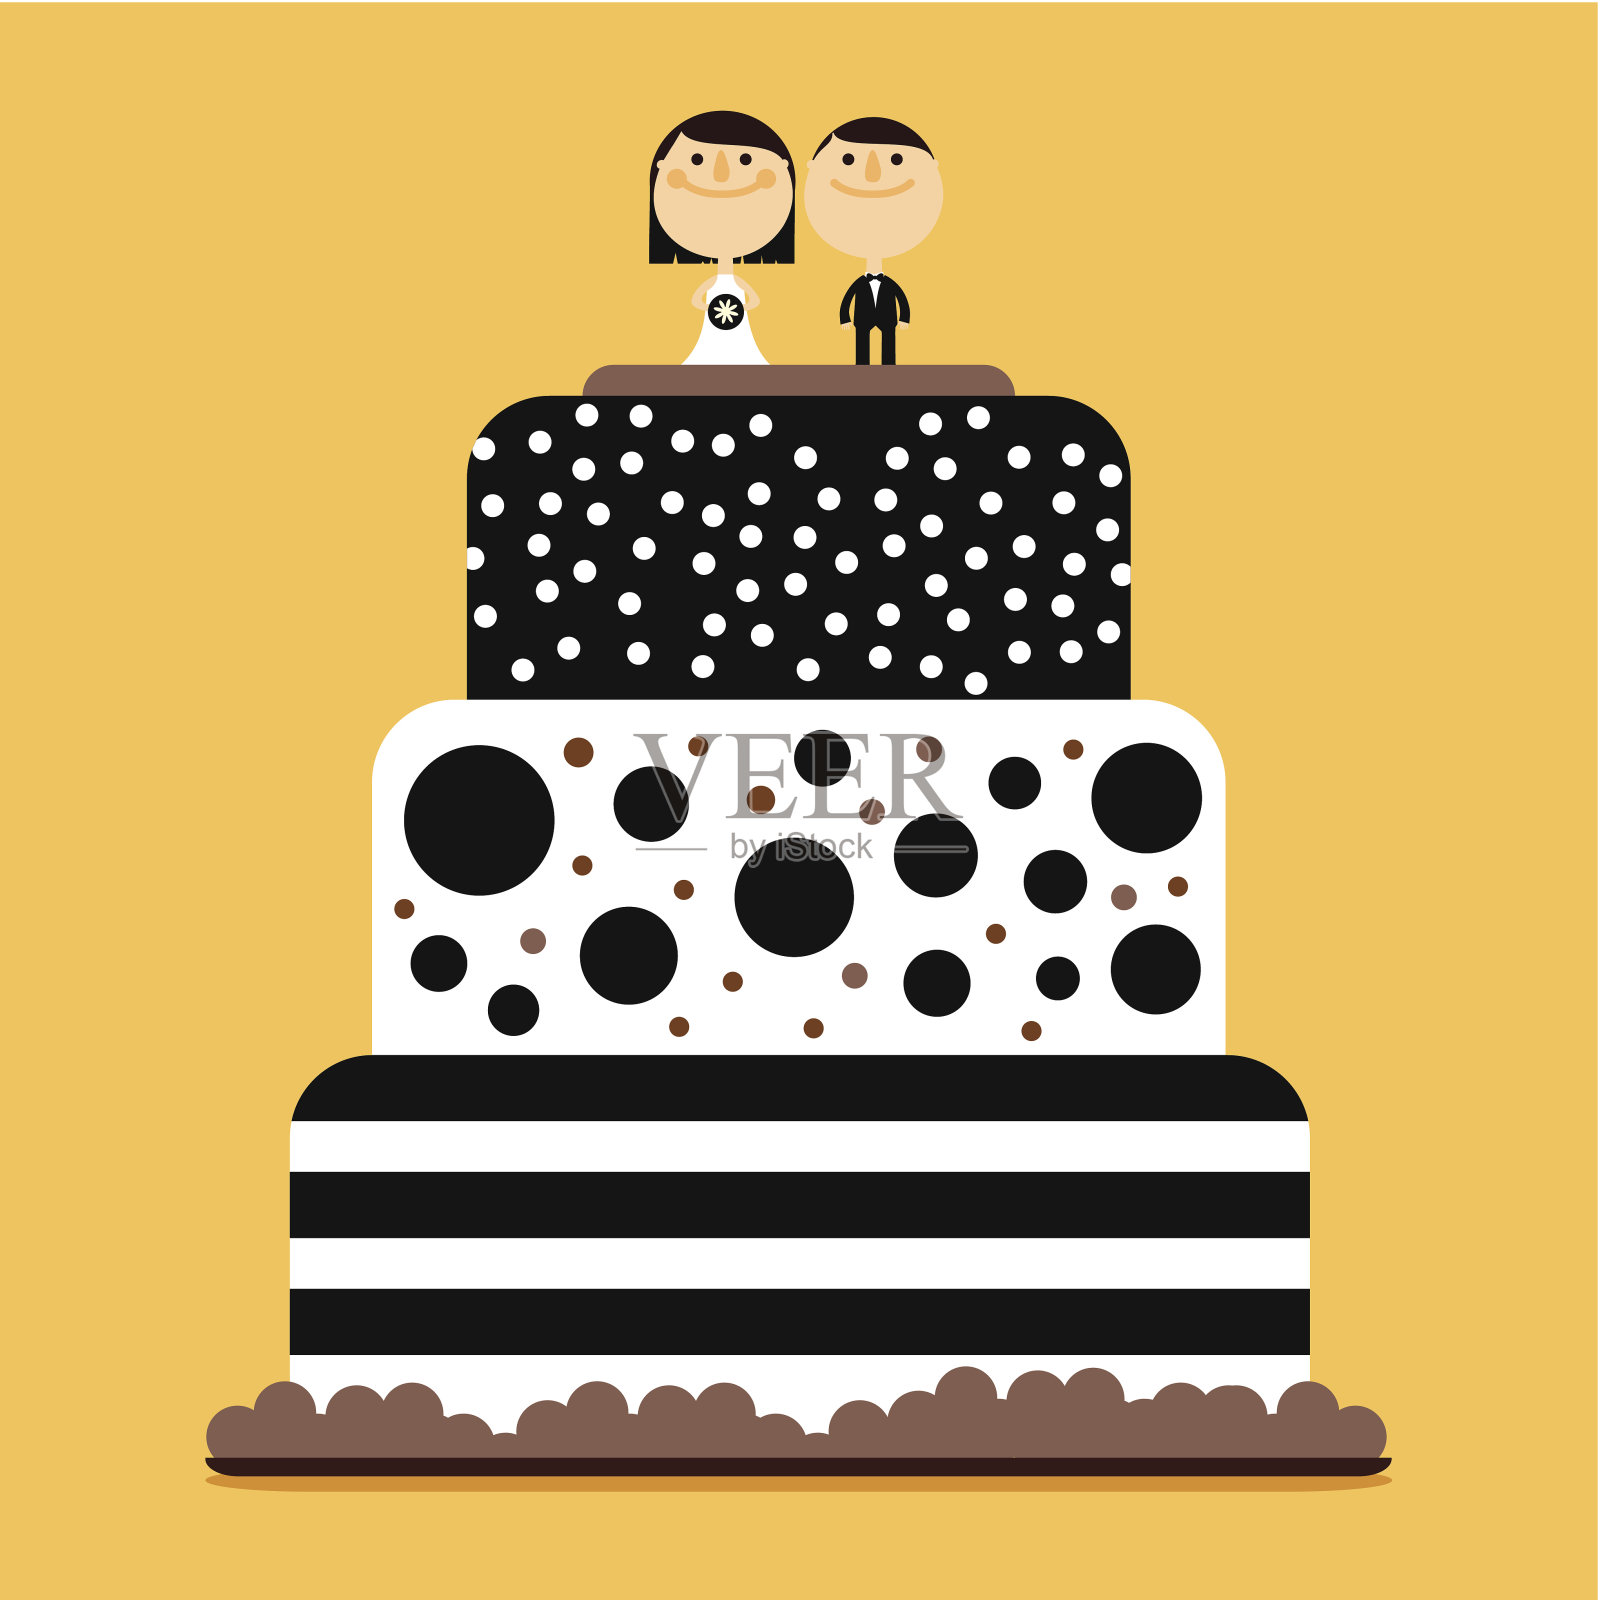 带点和条纹的婚礼蛋糕插画图片素材